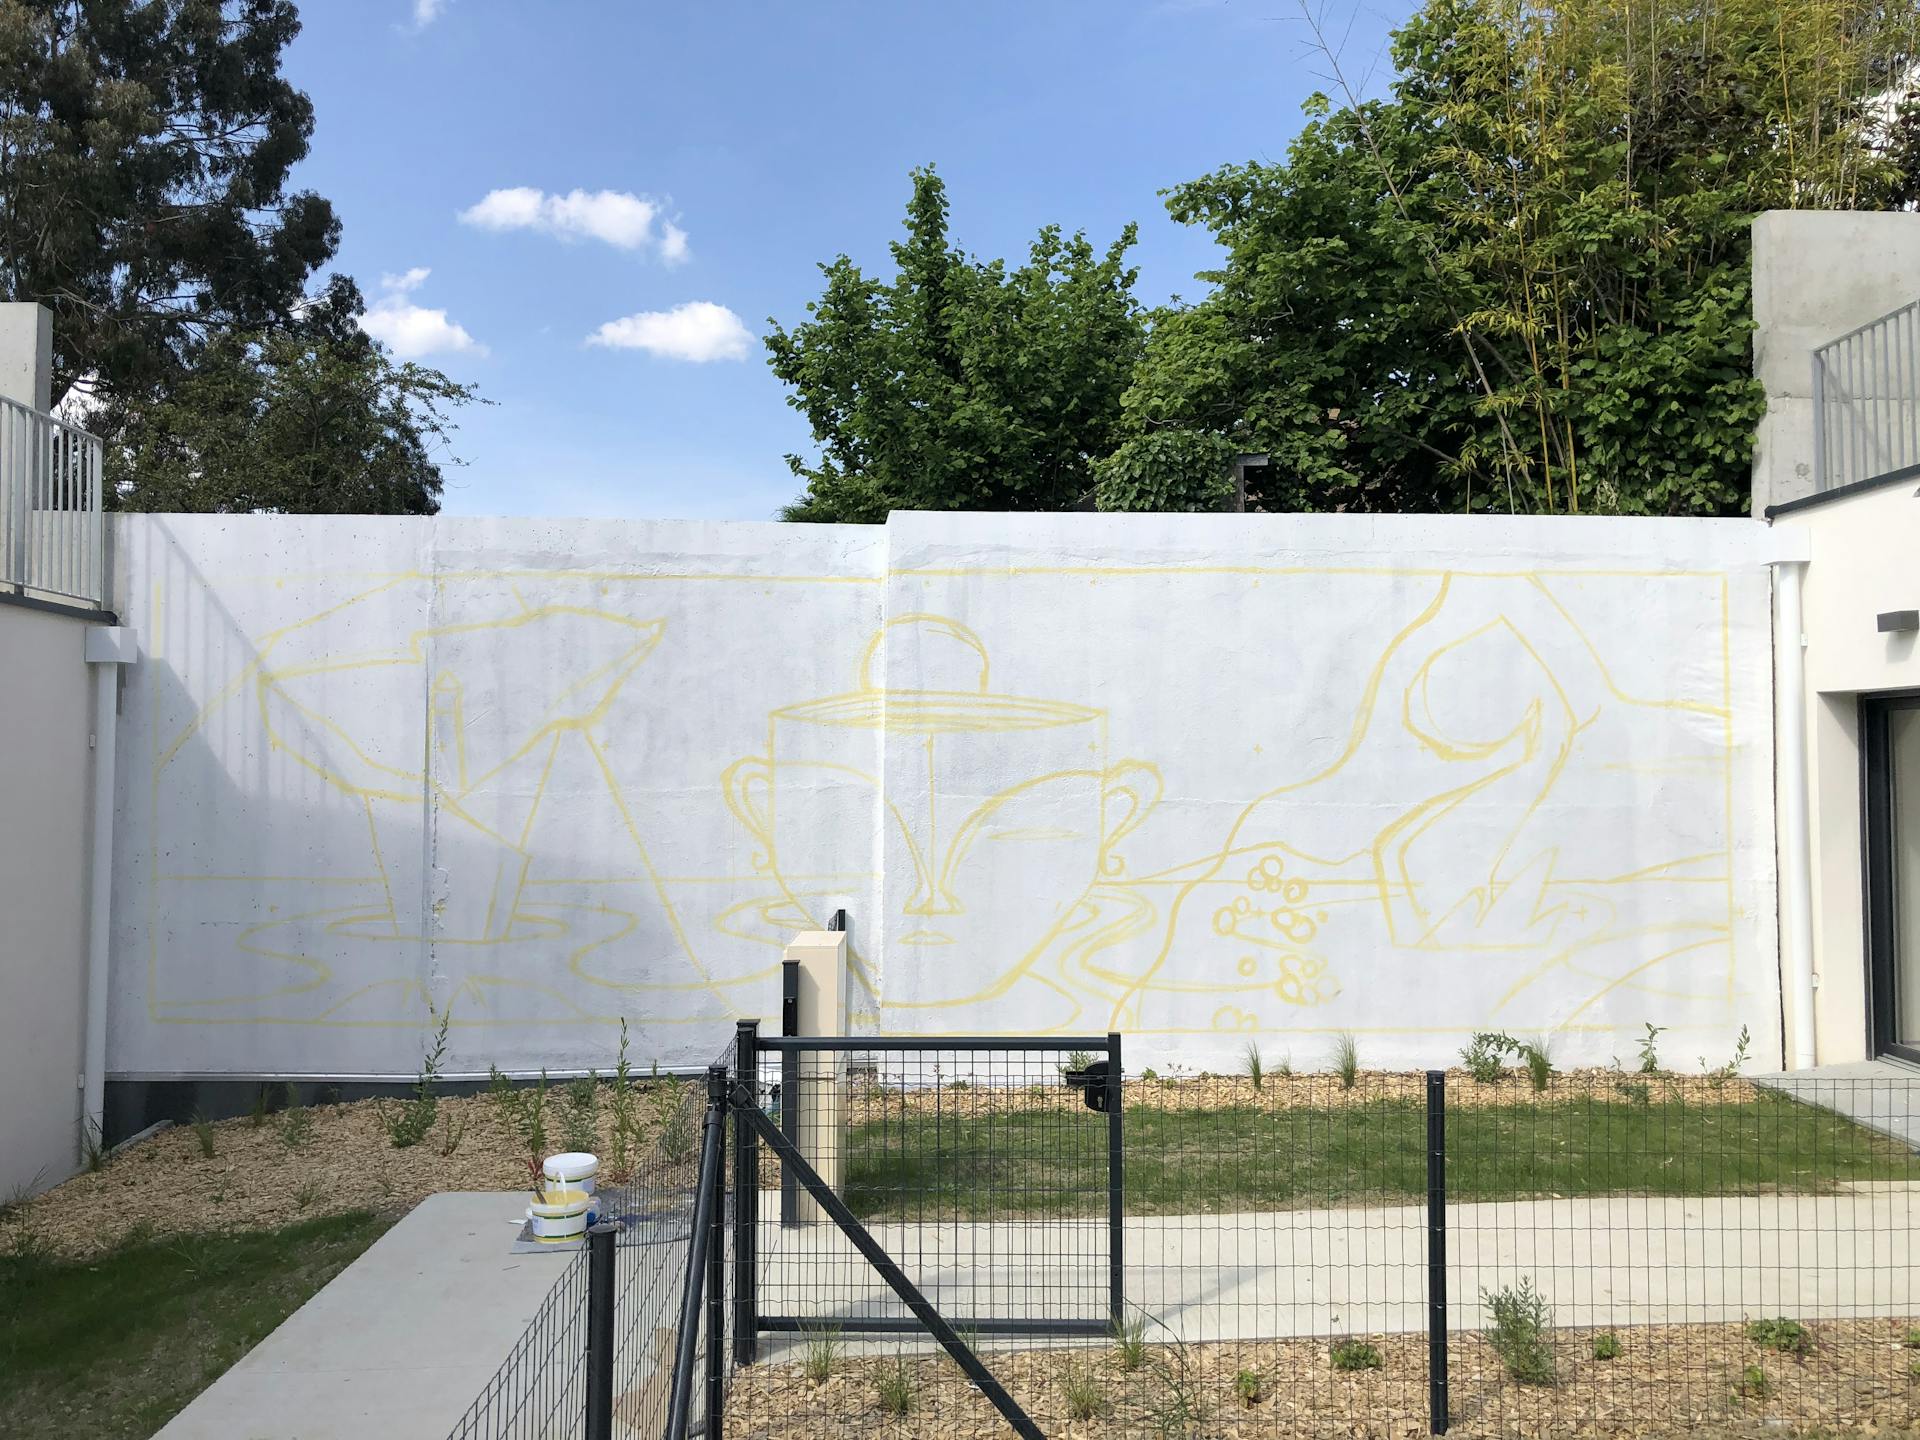 Traçage d'une oeuvre de street art sur le mur d'une cour d'immeuble, commanditée par Vinci Immobilier auprès du Studio Katra.